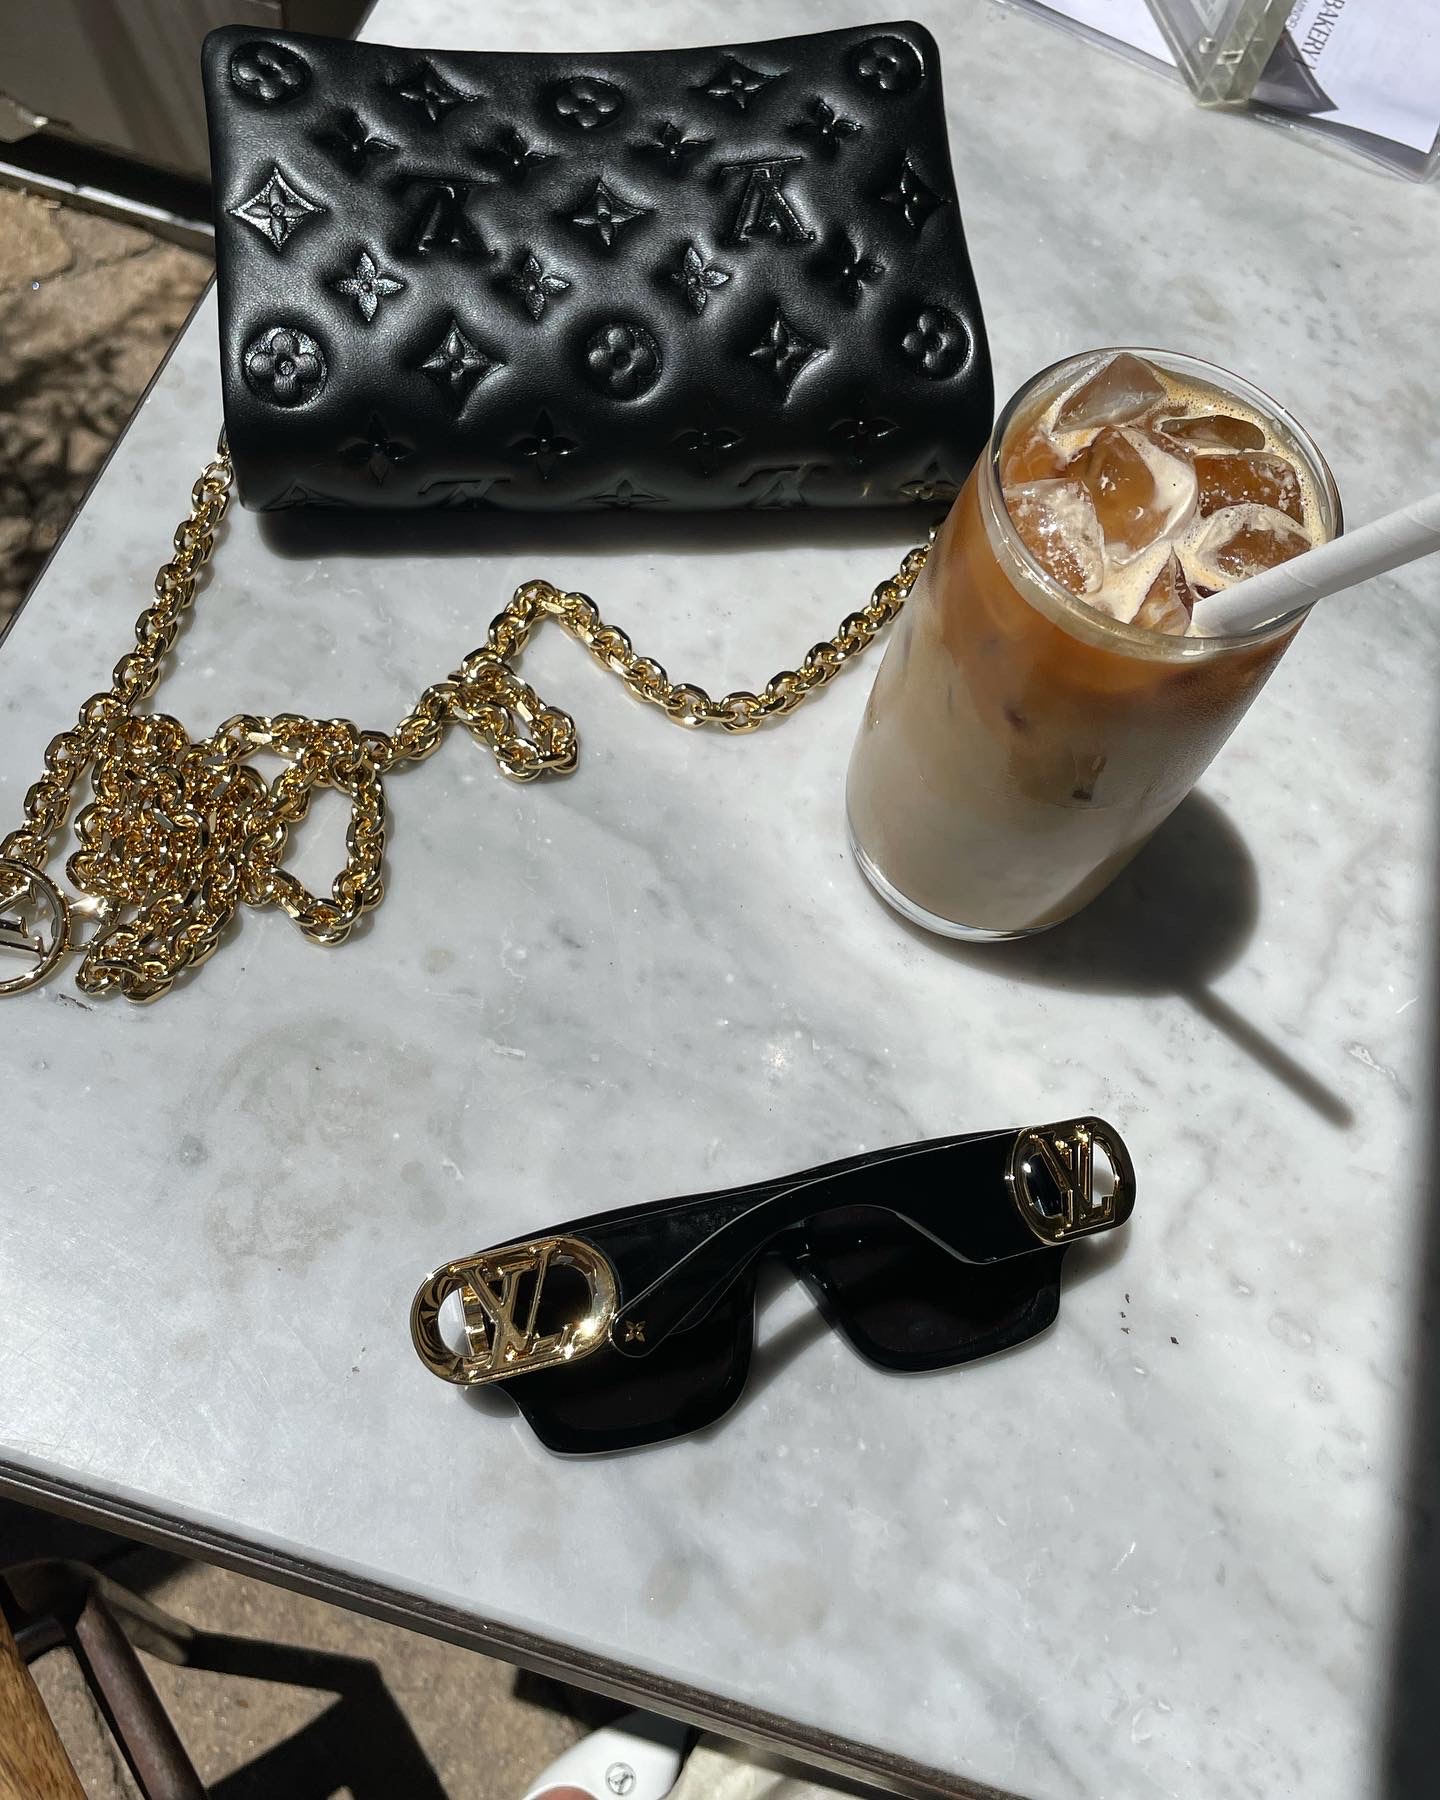 Luxurysnob on Instagram: “#Dior or #LV ? ⁣ ⁣ I love Louis Vuitton